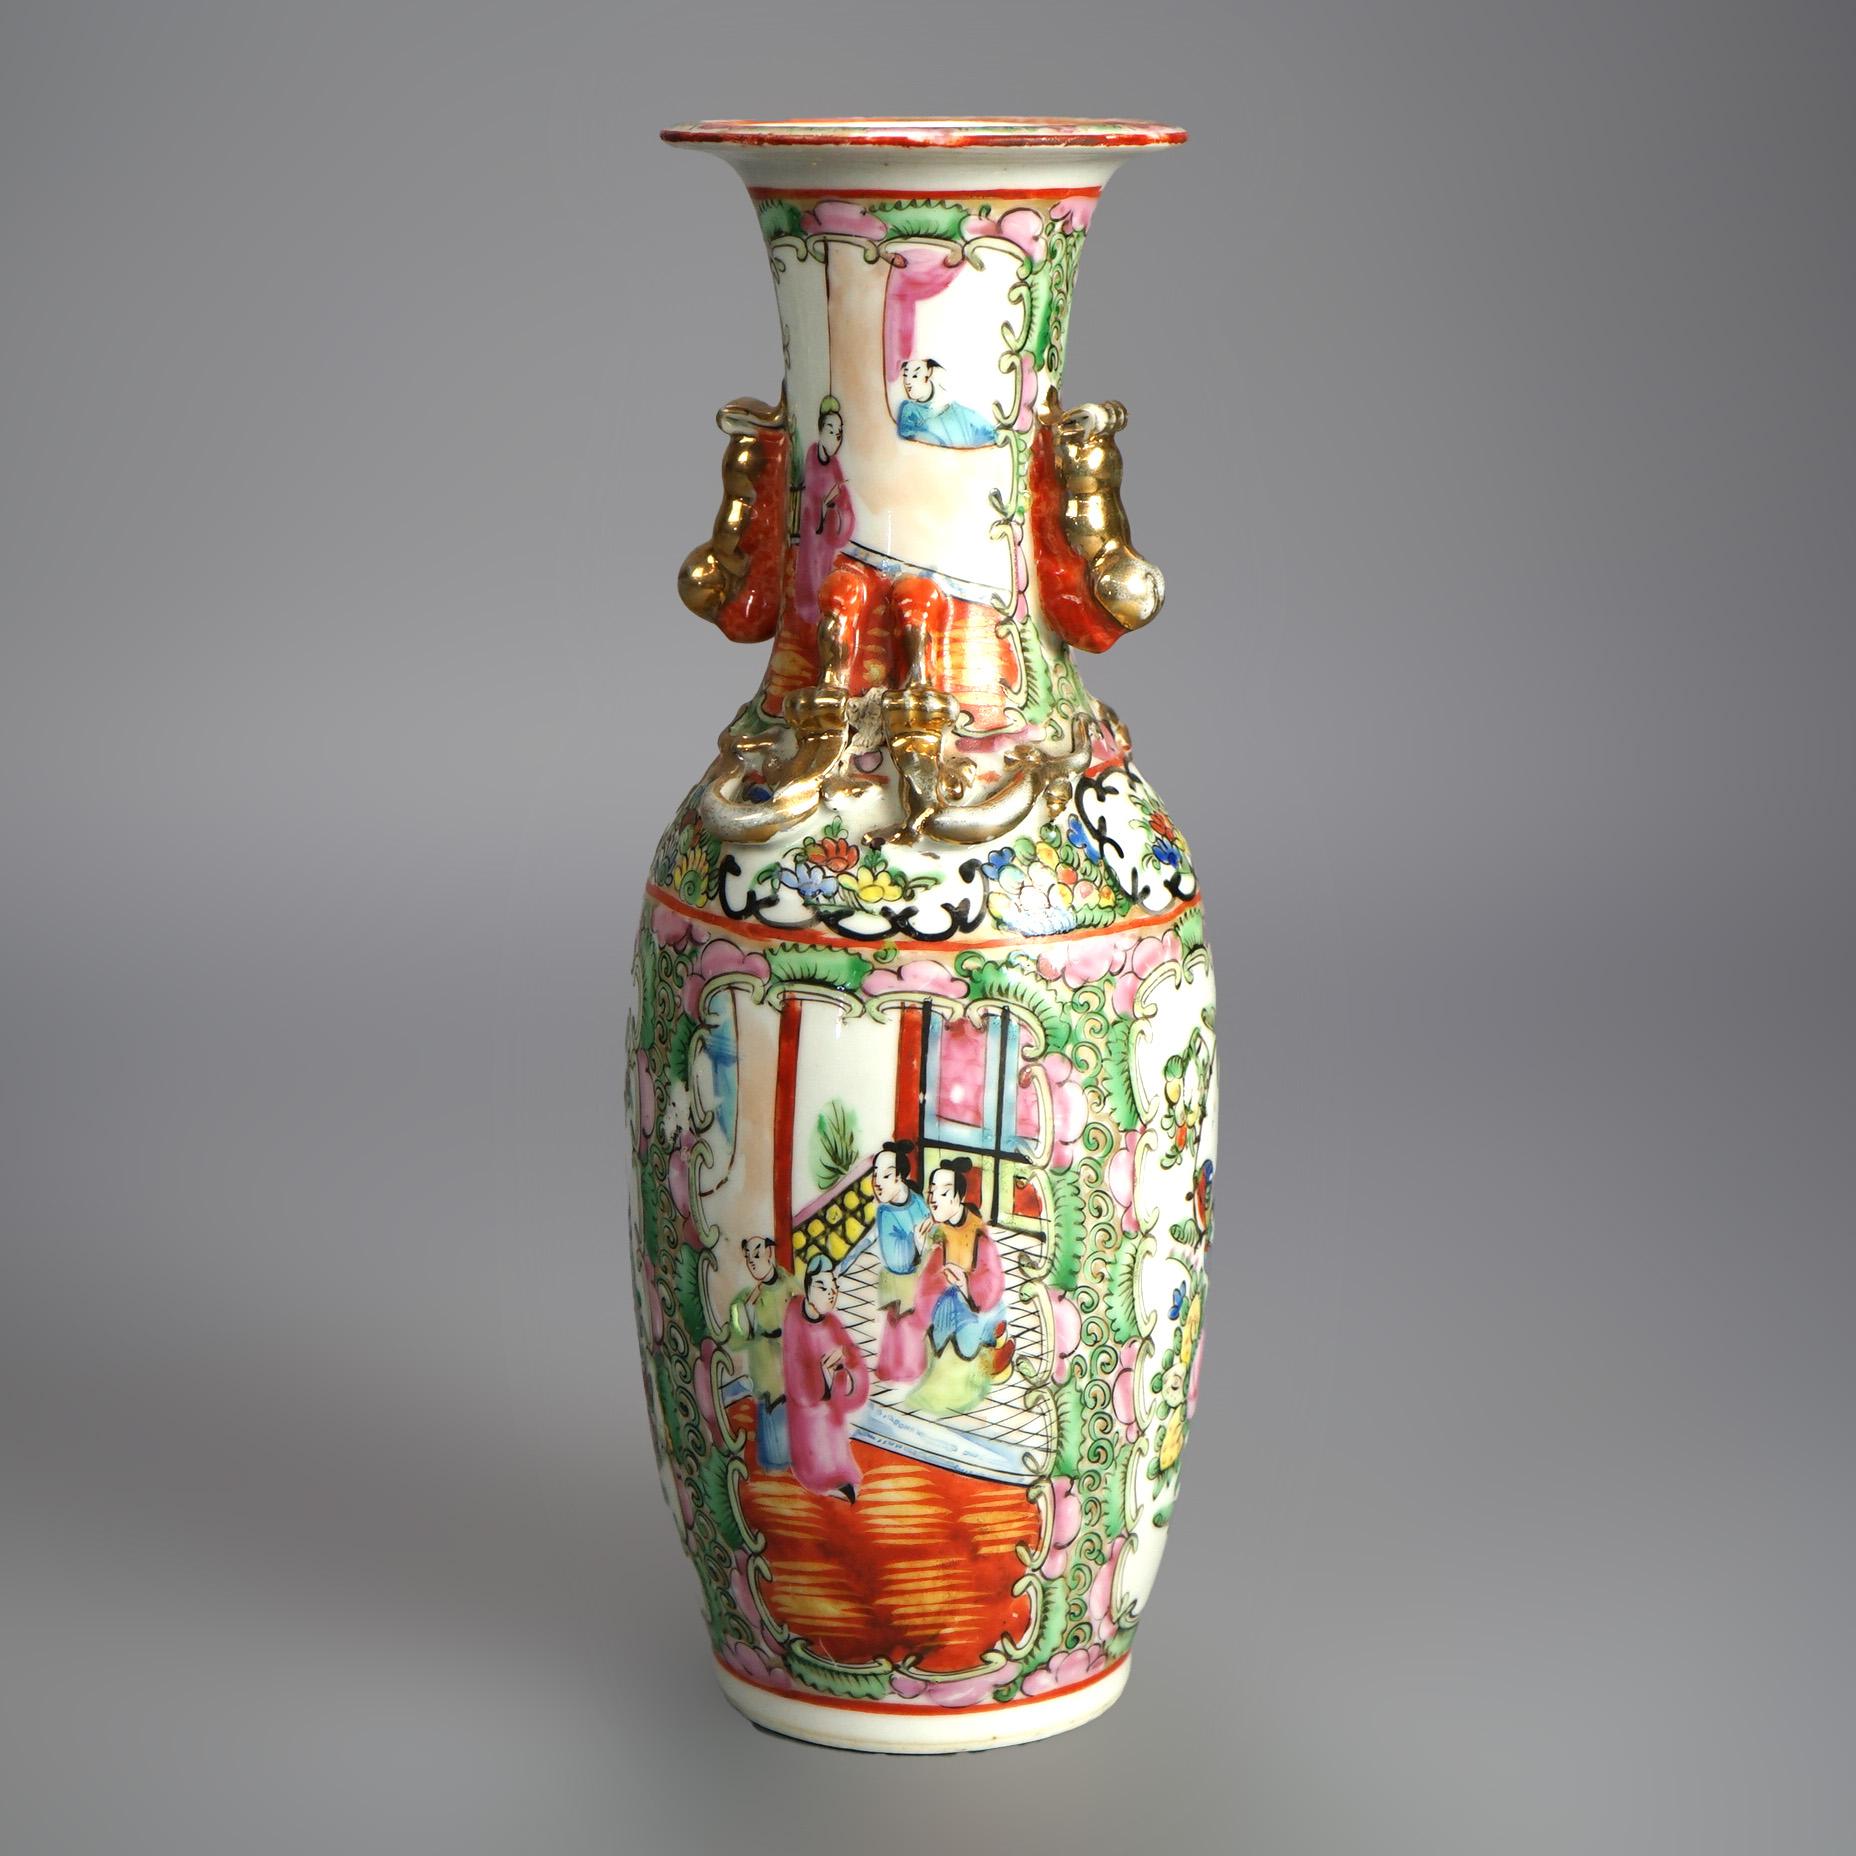 Antike chinesische Rosenmedaillon-Porzellan-Doppelhenkelvase mit Garten- und Genreszenen um 1900

Maße - 11,5 